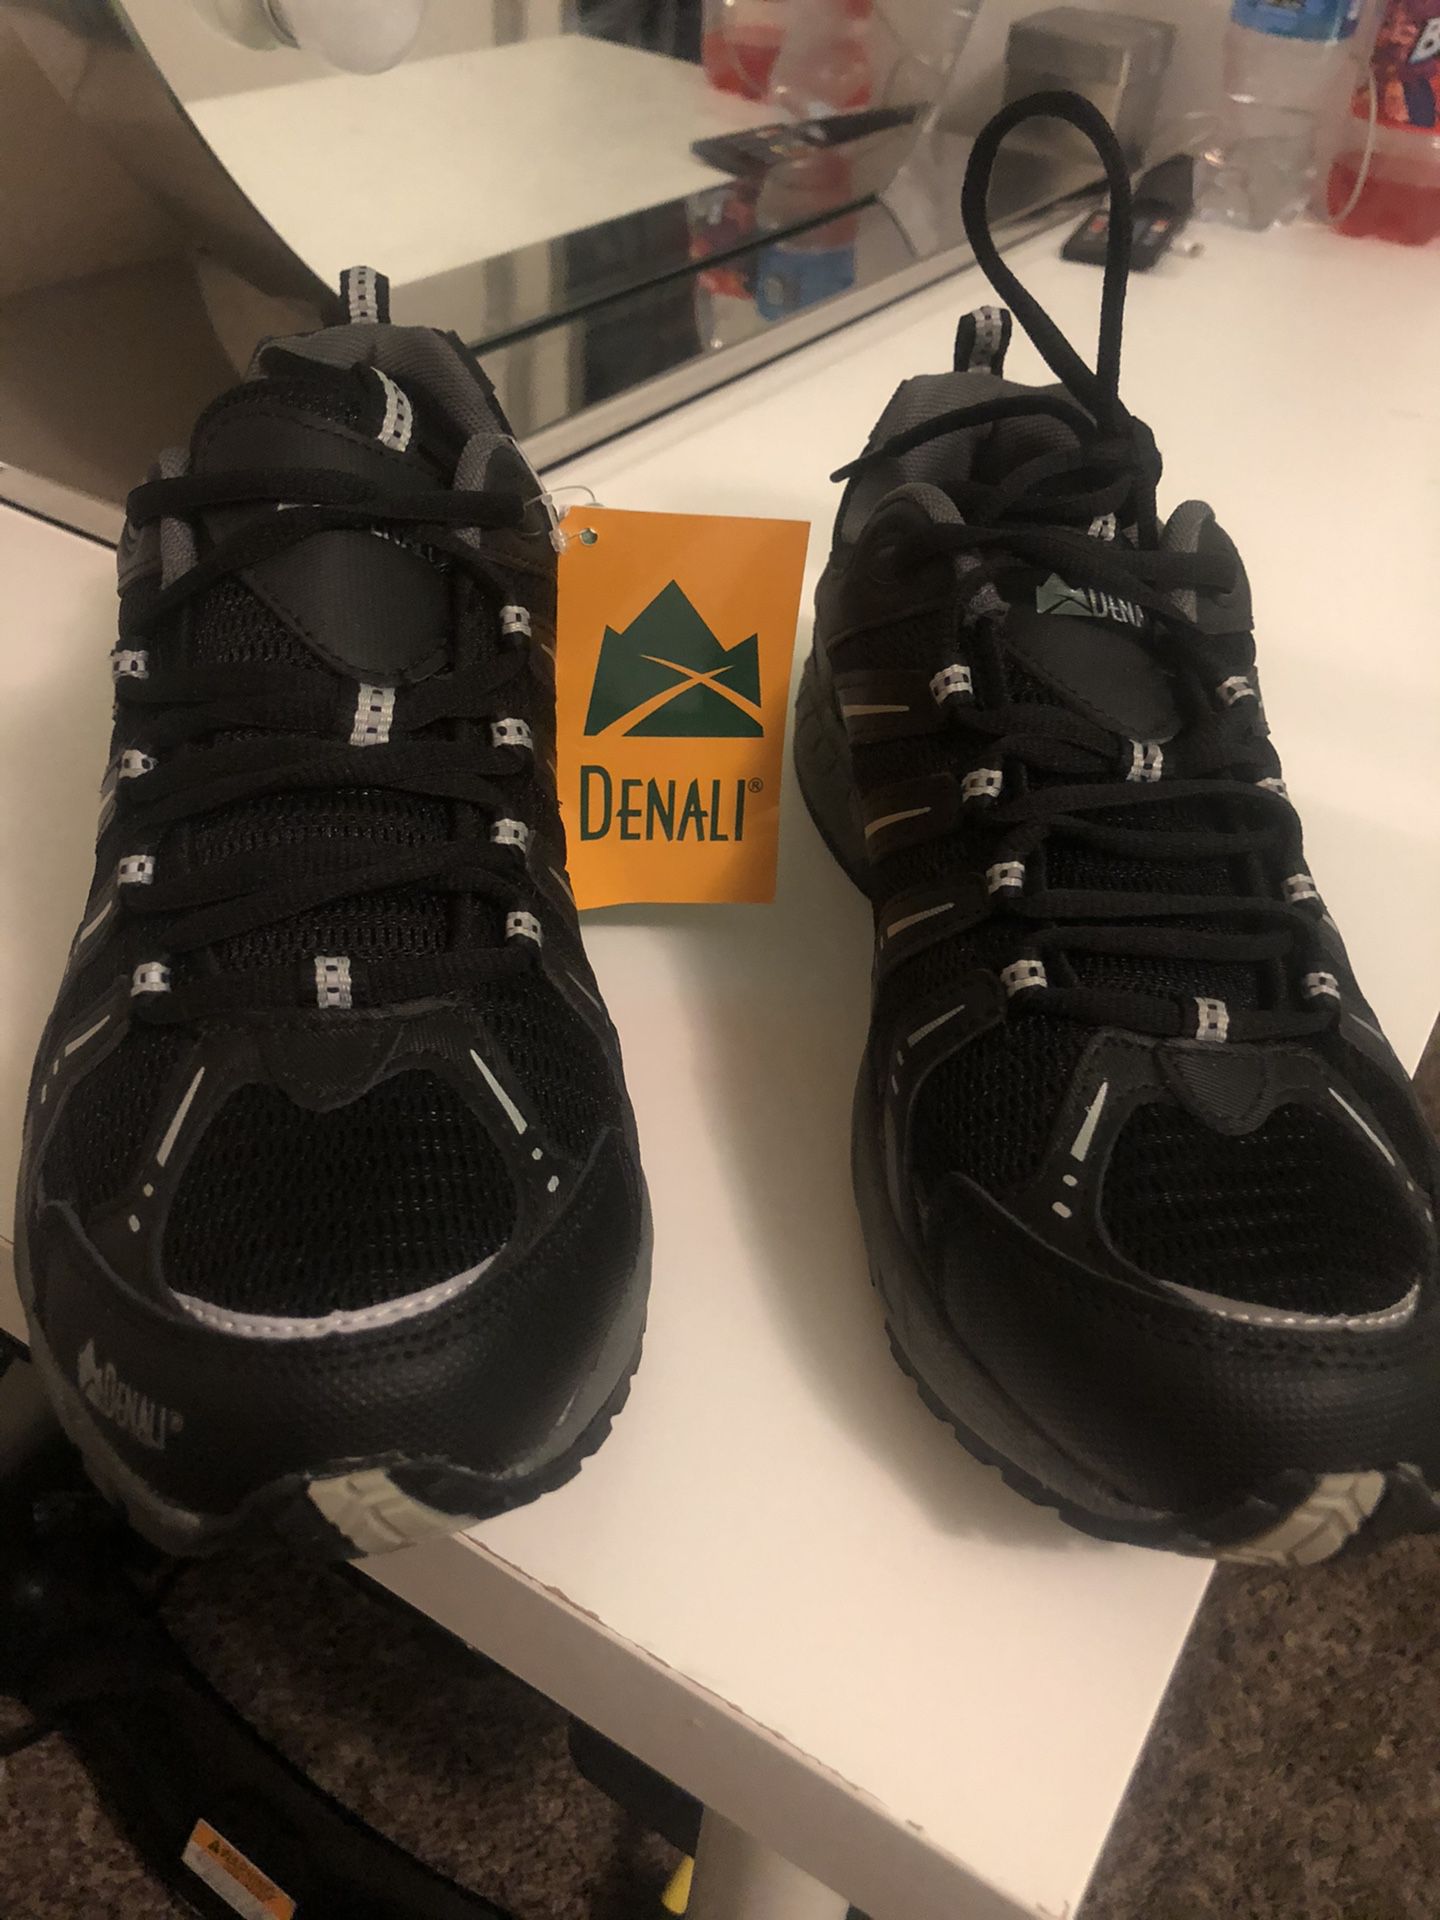 Denali shoes